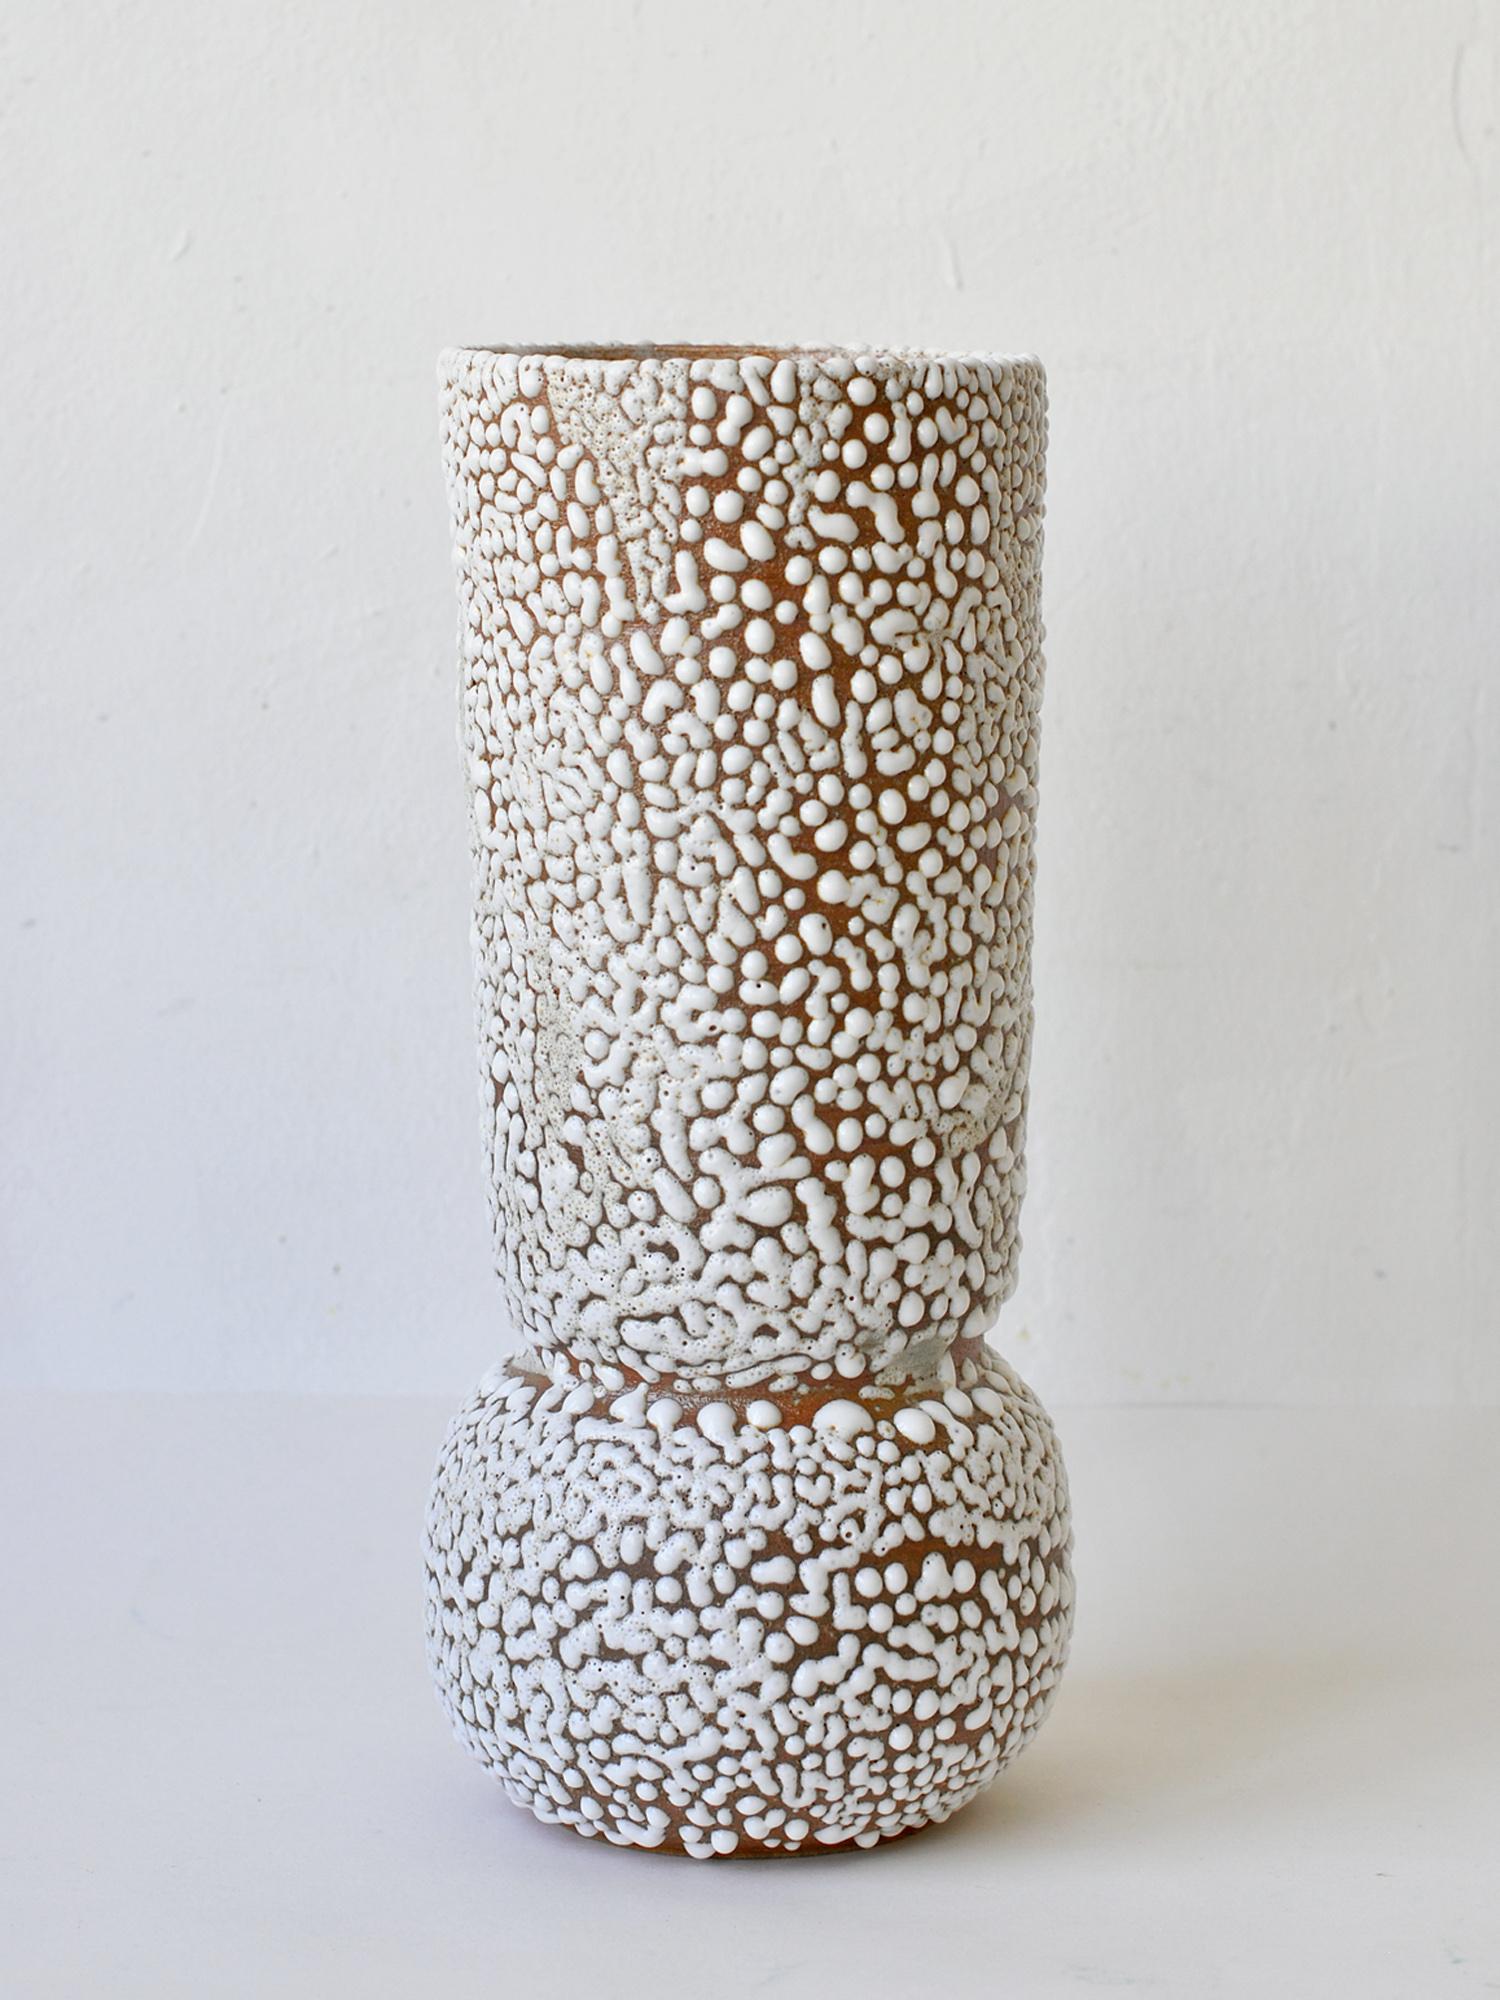 C-015 Weiße Vase aus Steingut von Moïo Studio
Abmessungen: T14 x B14 x H30 cm
MATERIALIEN: Weiße Kriechglasur auf hellbraunem Steingut
Von Hand auf dem Rad gefertigt
Einzigartiges Stück, fragen Sie nach Mehrlingen

ist das in Berlin ansässige Studio